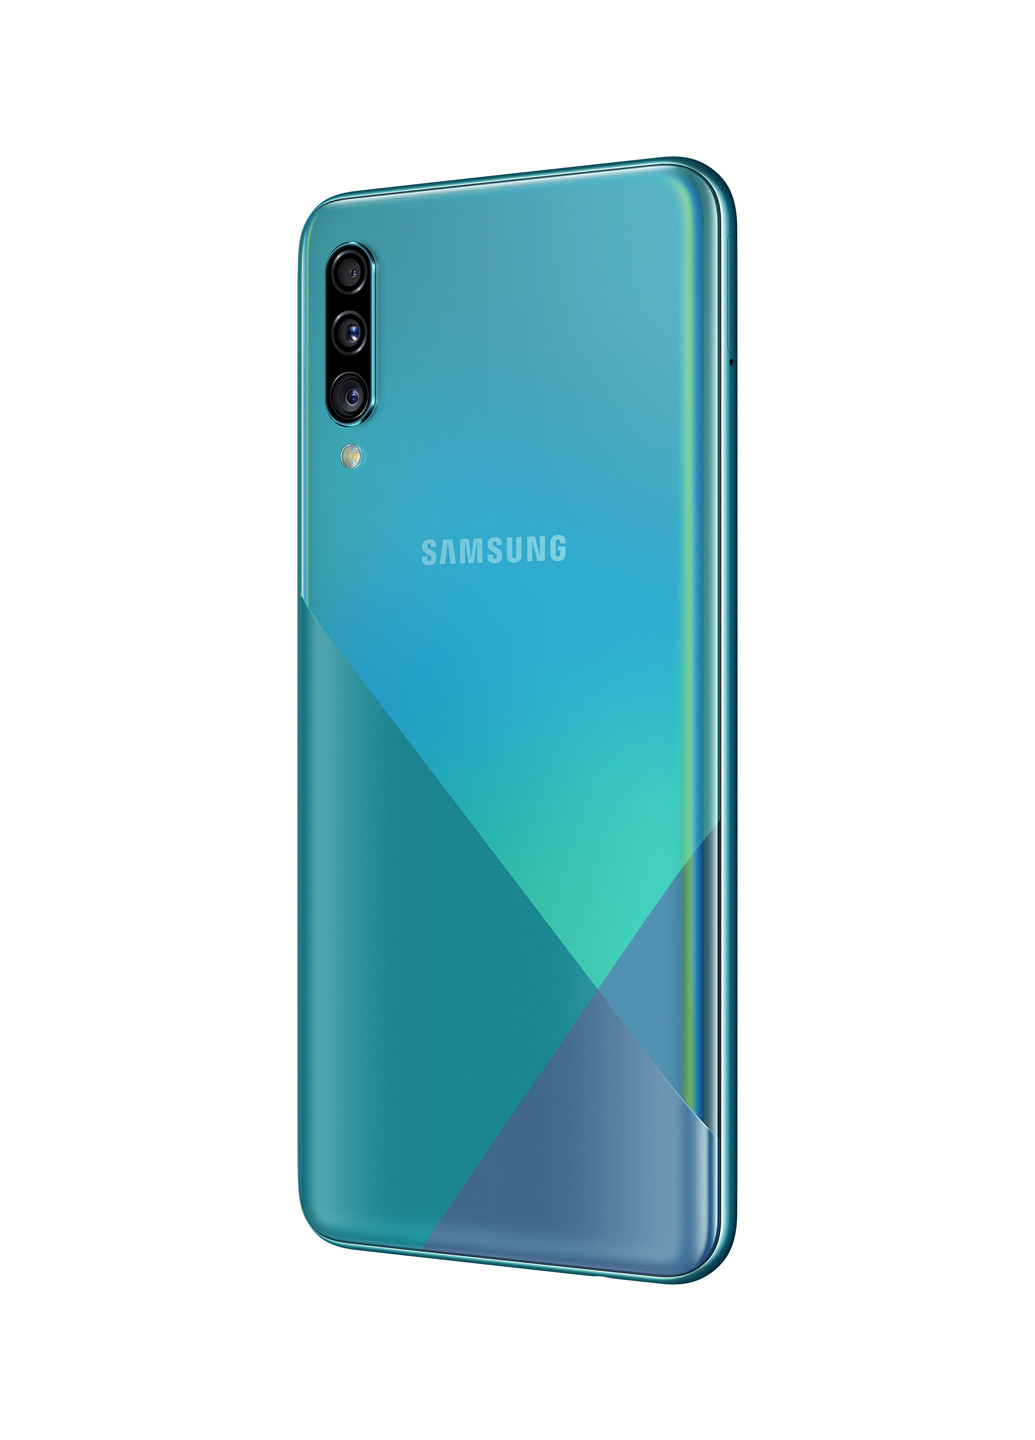 Смартфон Galaxy Samsung A30s 4/64Gb Prism Crush Green (SM-A307FZGVSEK) зелёный